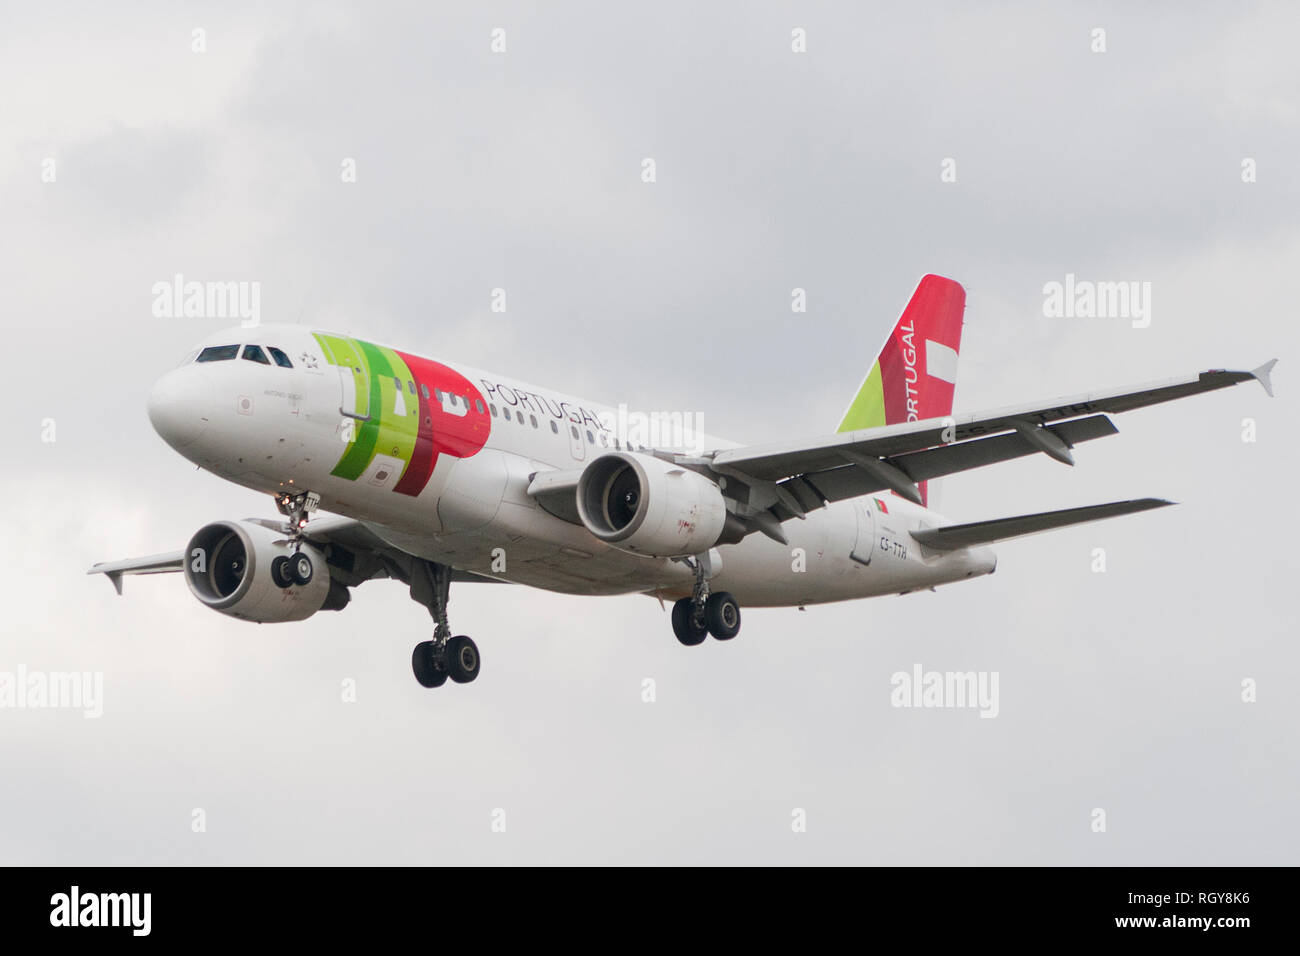 Londres, UK - 6 août 2013 - Un avion de la TAP Portugal atterrit à l'aéroport d'Heathrow à Londres Banque D'Images